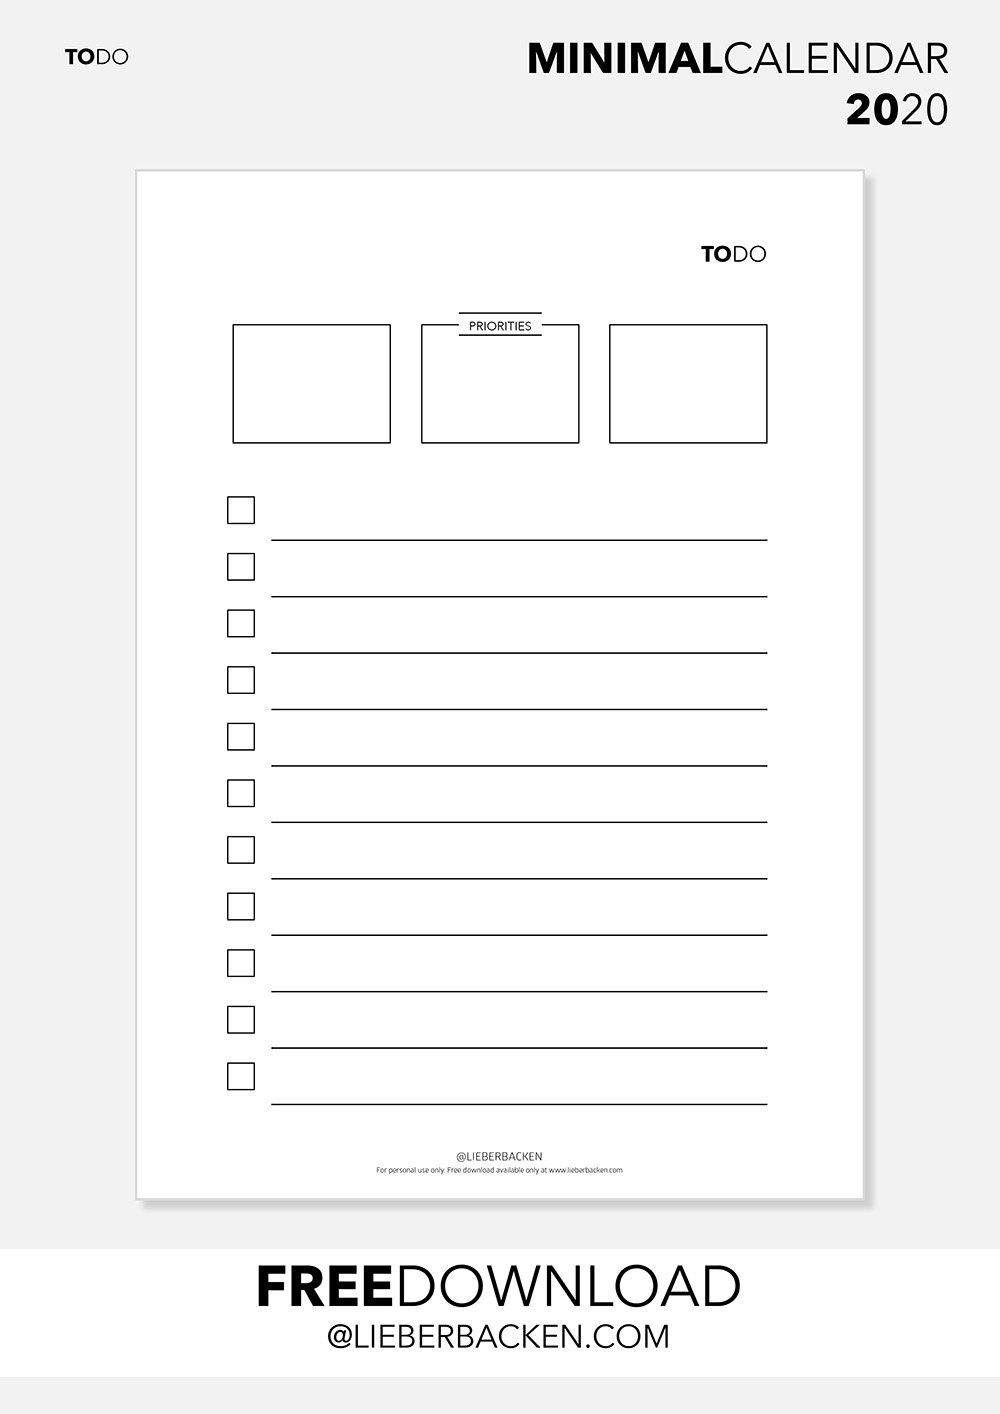 TO DO List - Free Printable Calender Bundle | Gratis Download TO DO Liste und kompletter Kalender